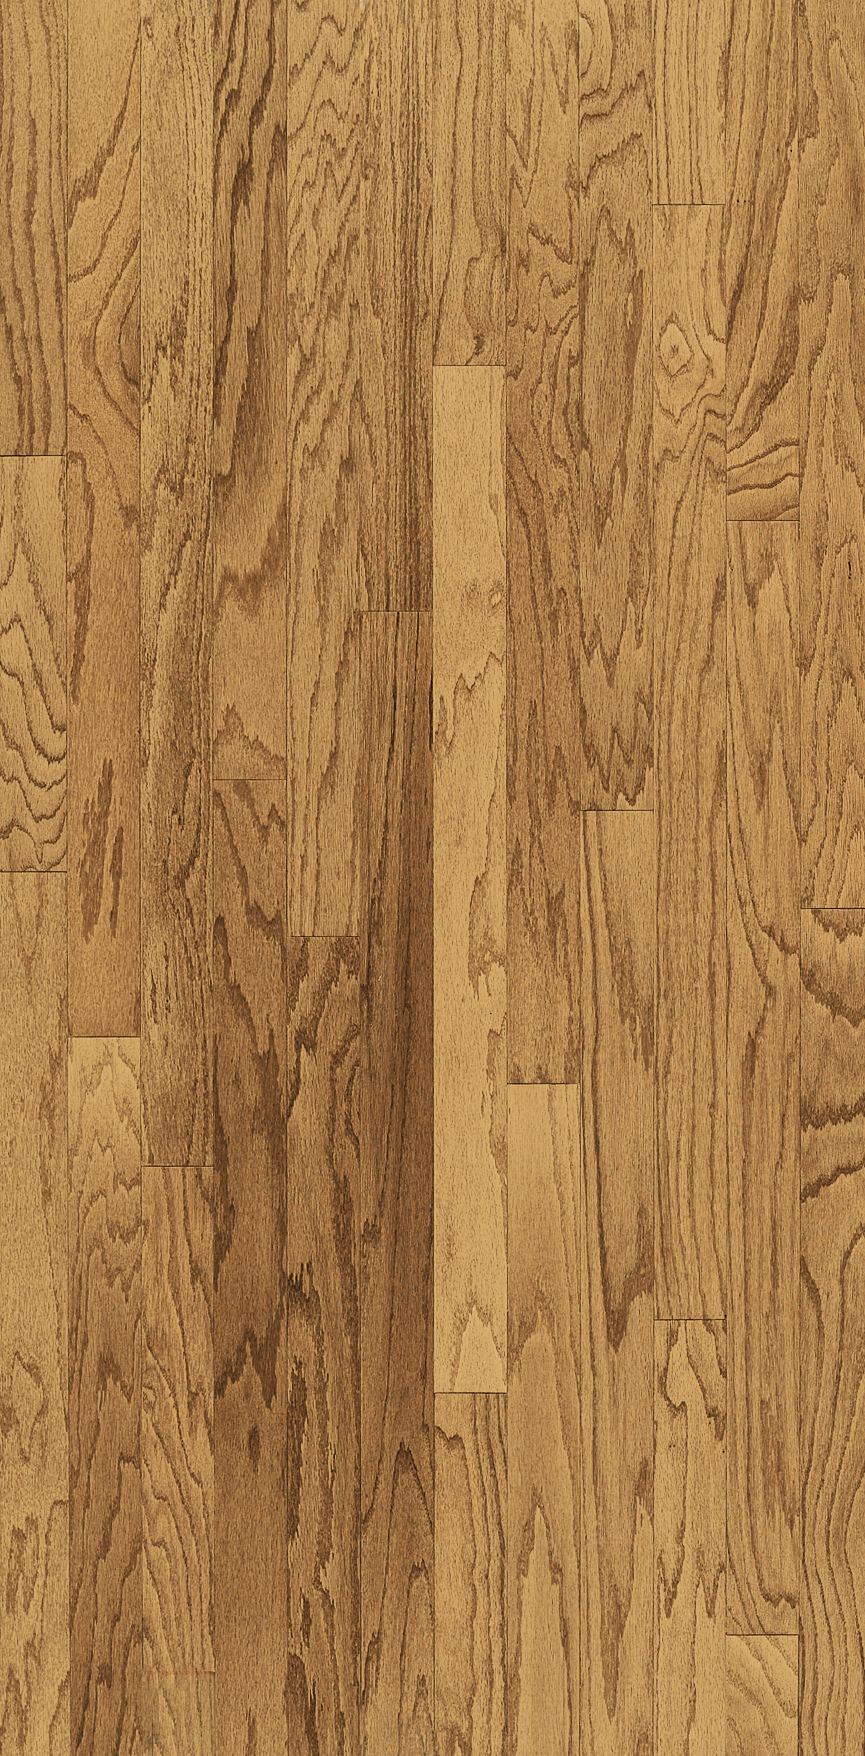 Red Oak Engineered Hardwood E534ee, Harvest Oak Hardwood Flooring